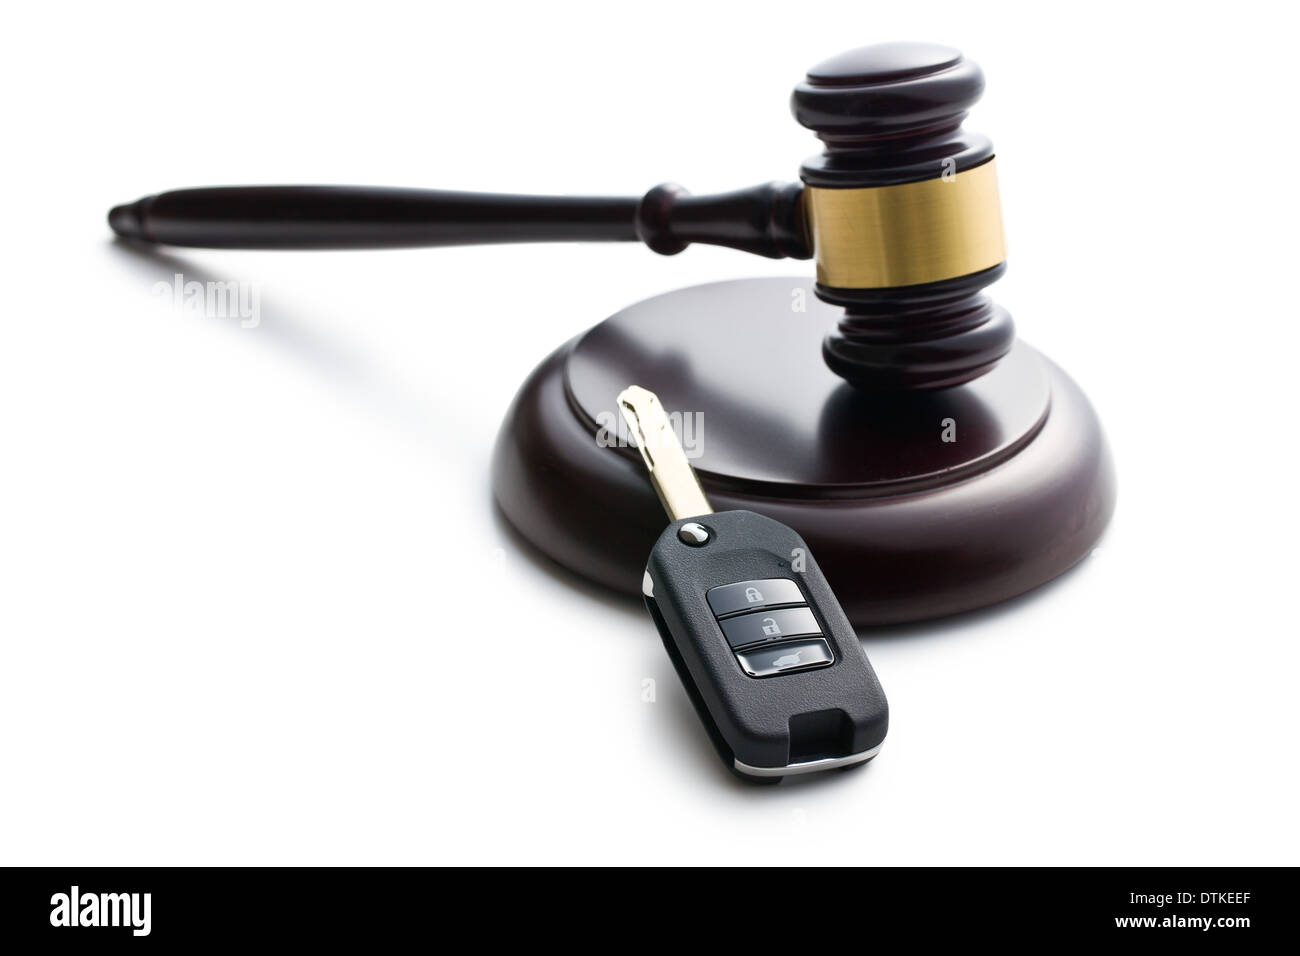 car key and judge gavel on white background Stock Photo